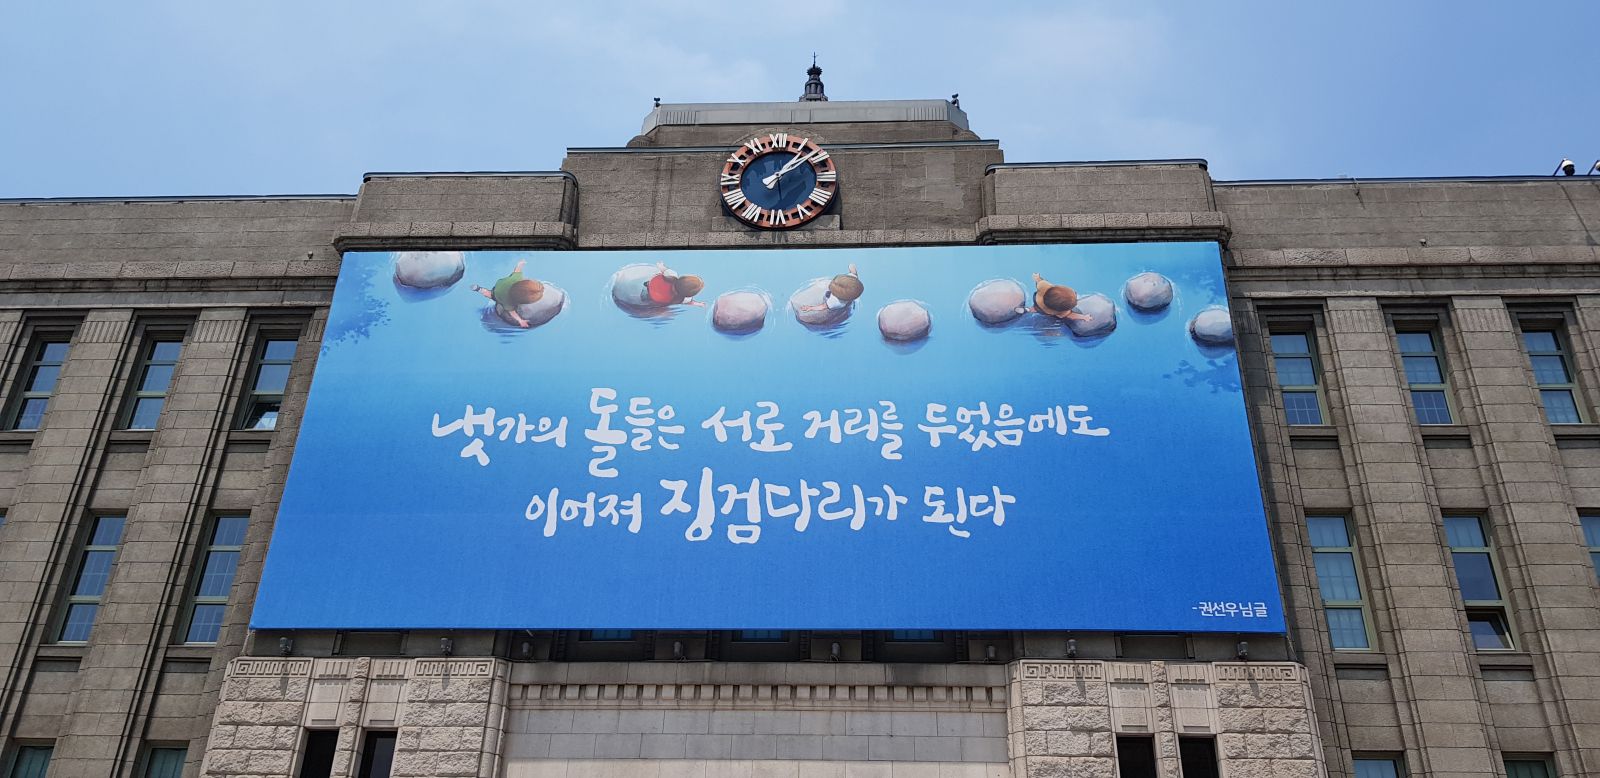 서울도서관 전경사진 - 냇가의 돌들은 서로 거리를 두었음에도, 이어져 징검다리가 된다 확대사진